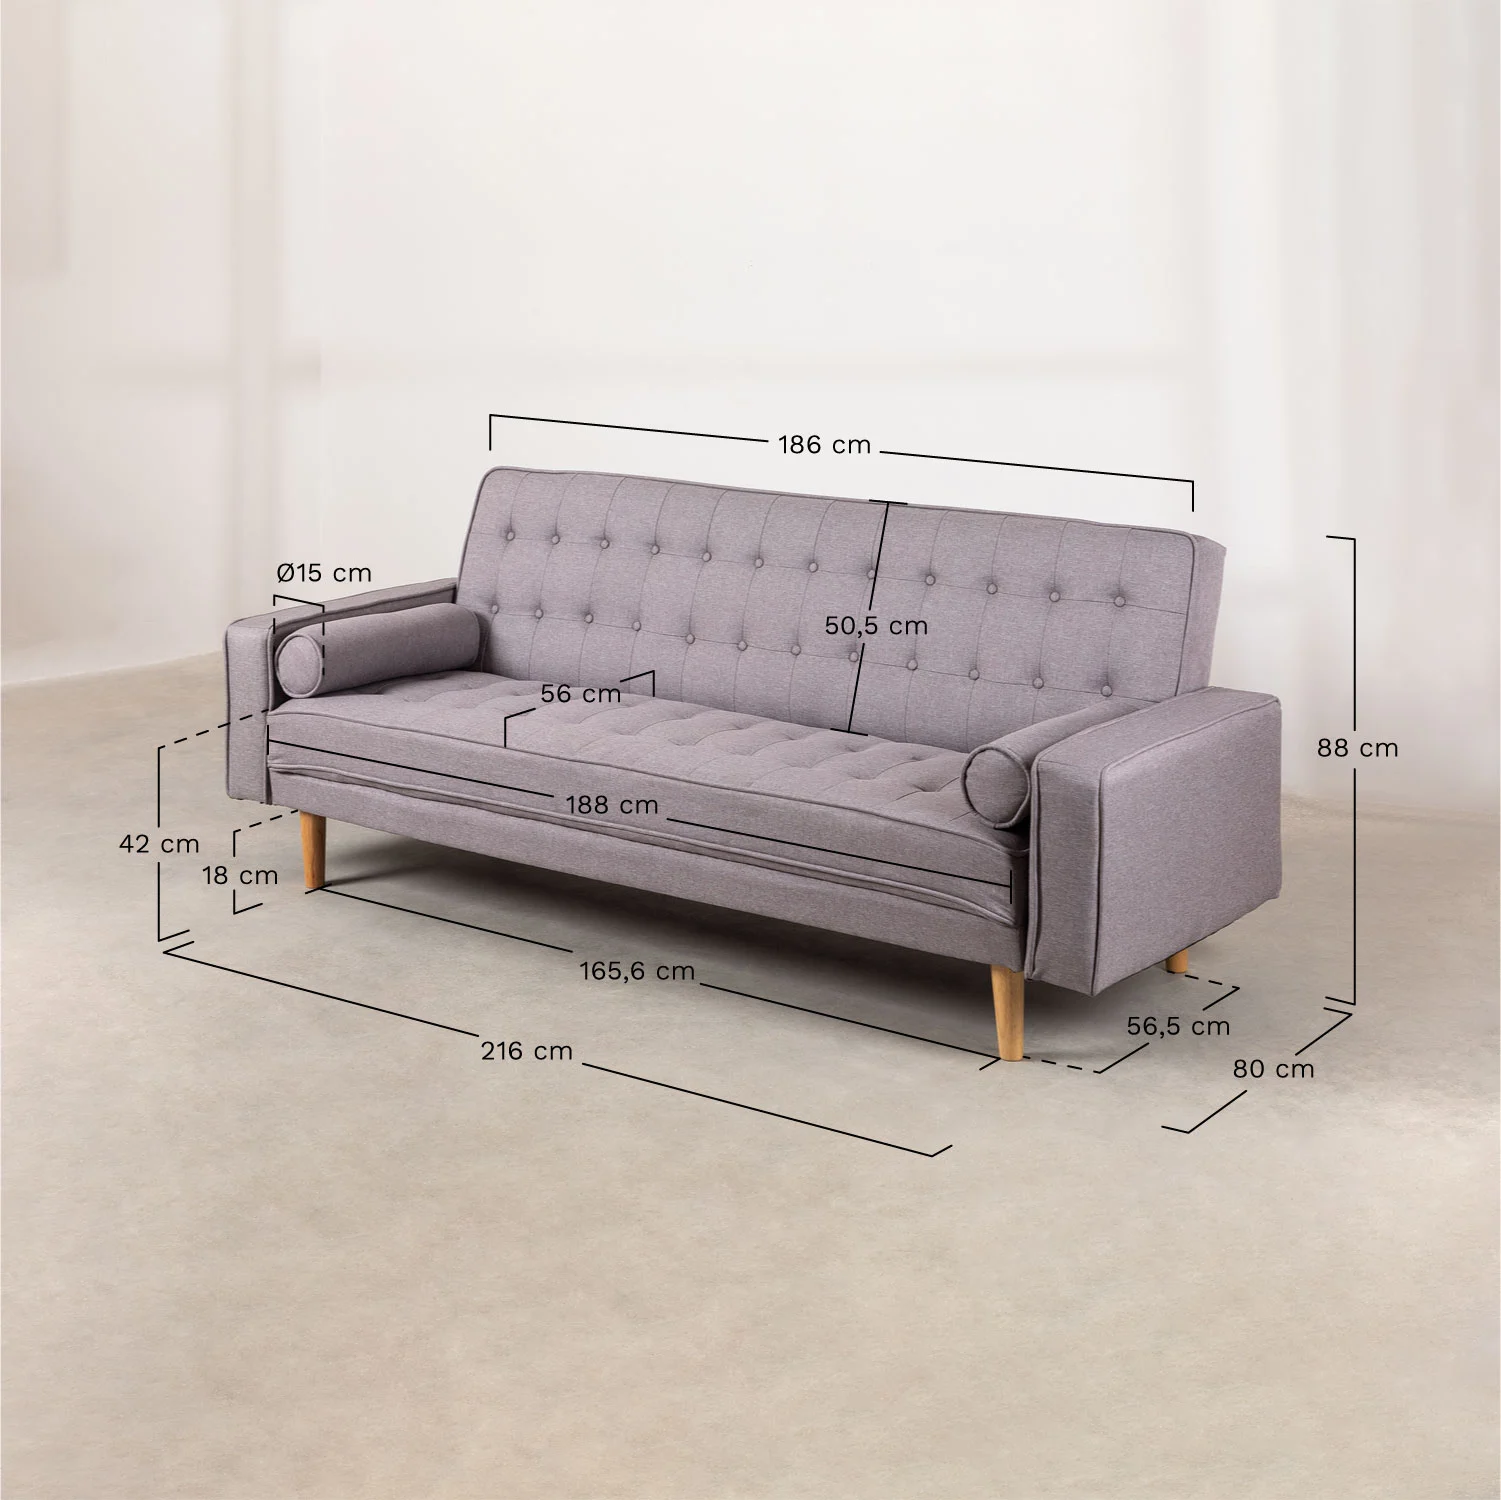 sofa cama de 3 plazas en lino brion (3)